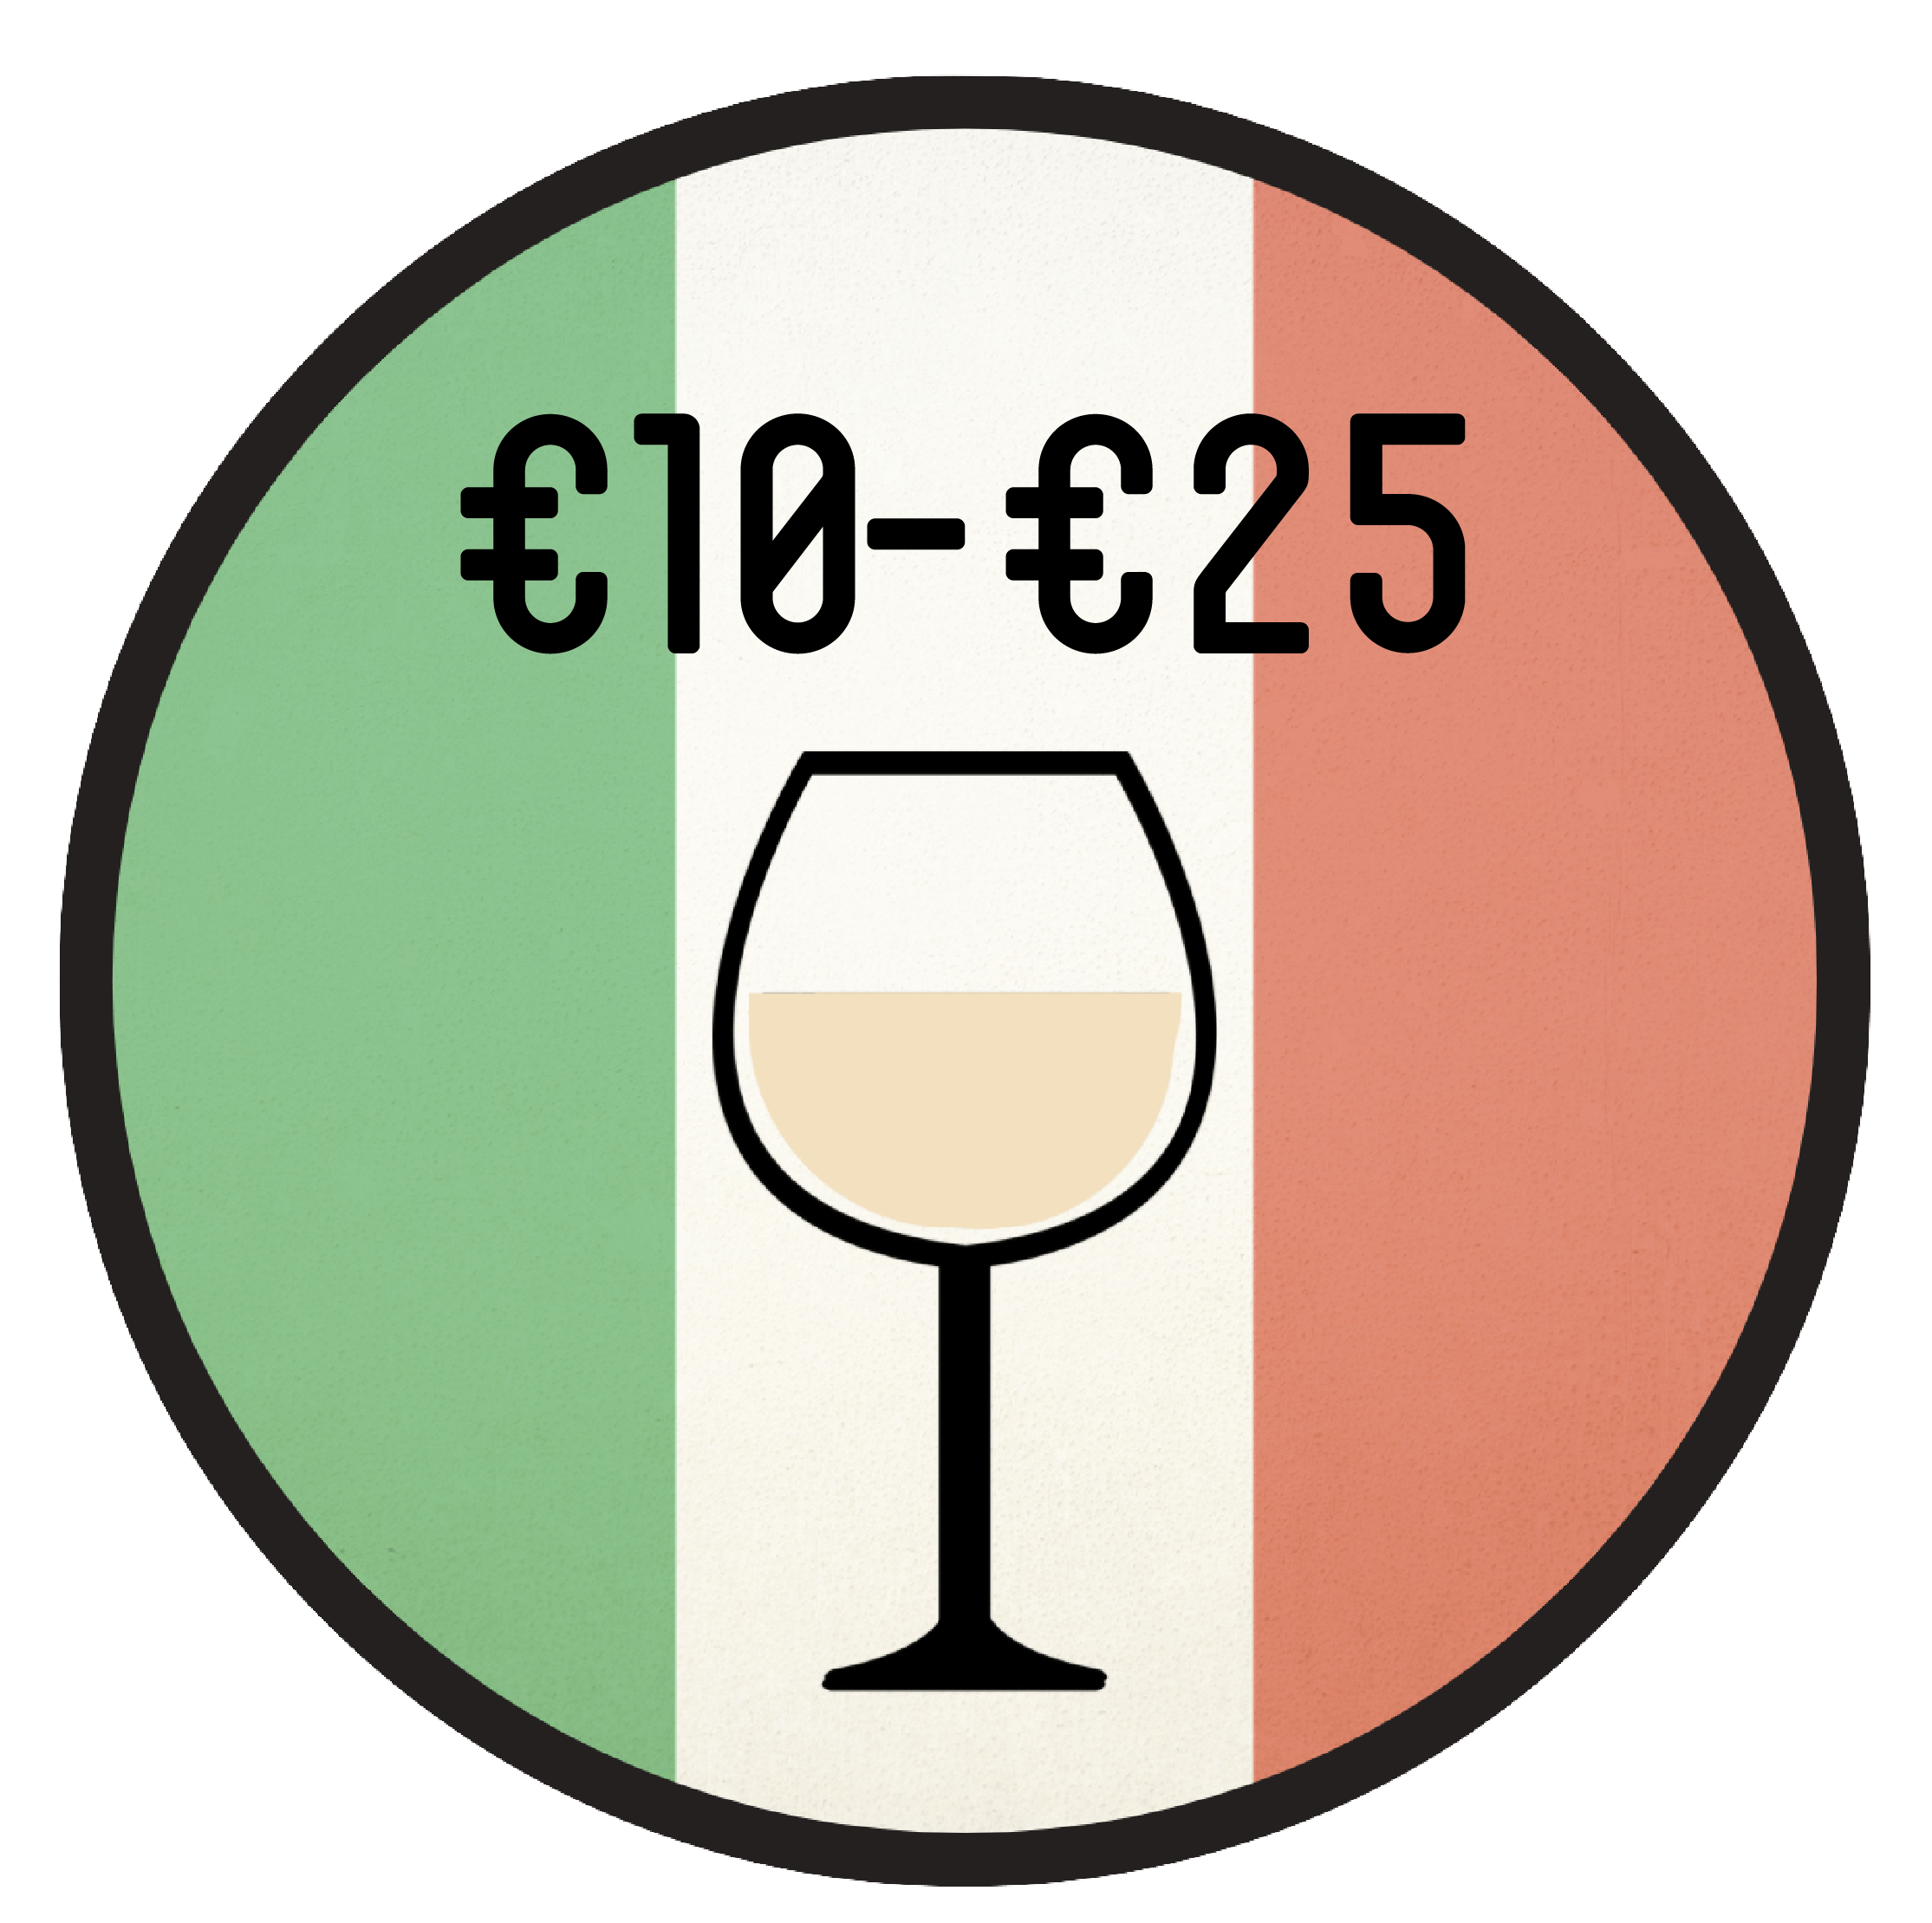 Behandeling droefheid Vloeibaar Top 10 Italiaanse wijnen - Casadelvino.nl